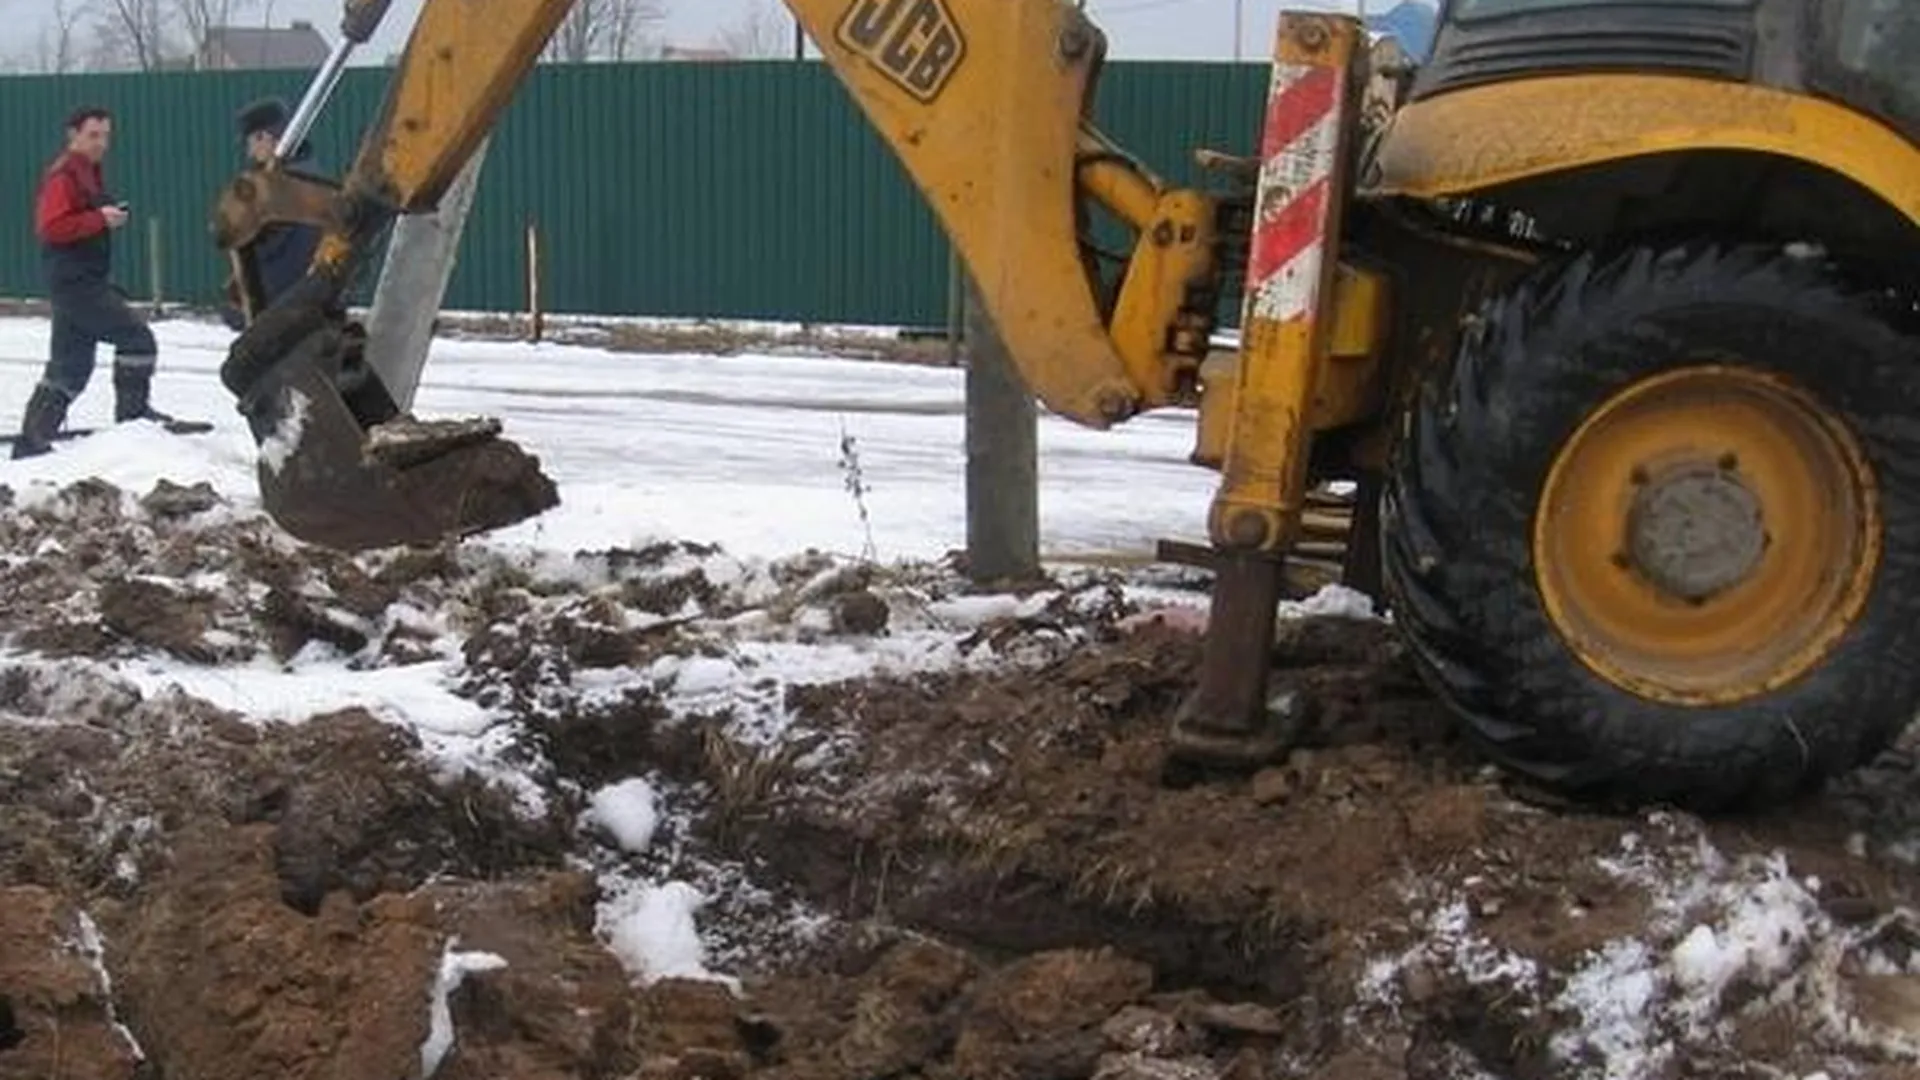 Незаконные земляные работы в области обошлись в 2 млн руб